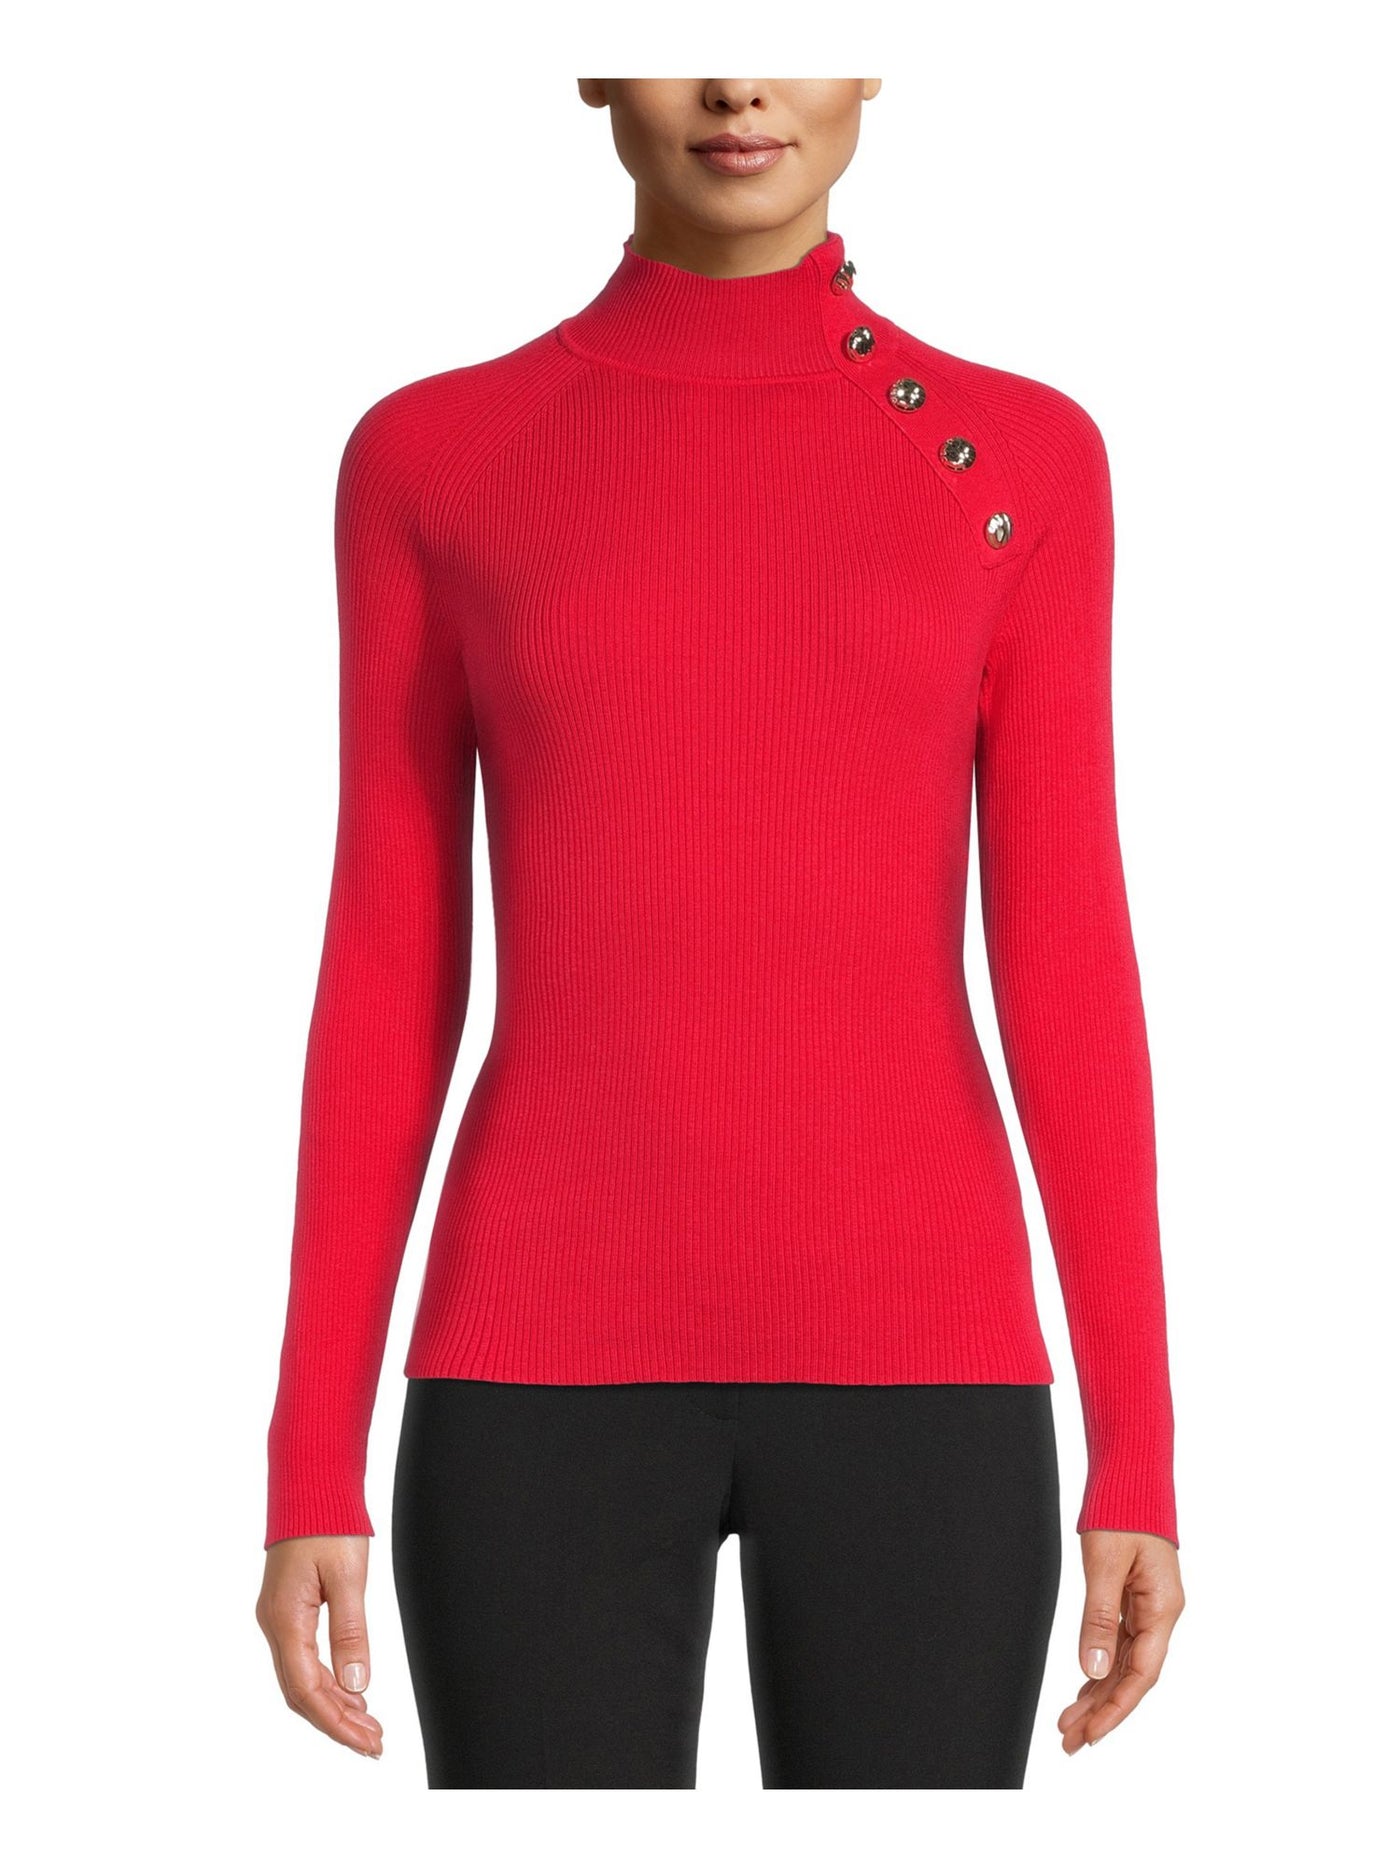 ANNE KLEIN Womens Red Long Sleeve Wear To Work Sweater XXS